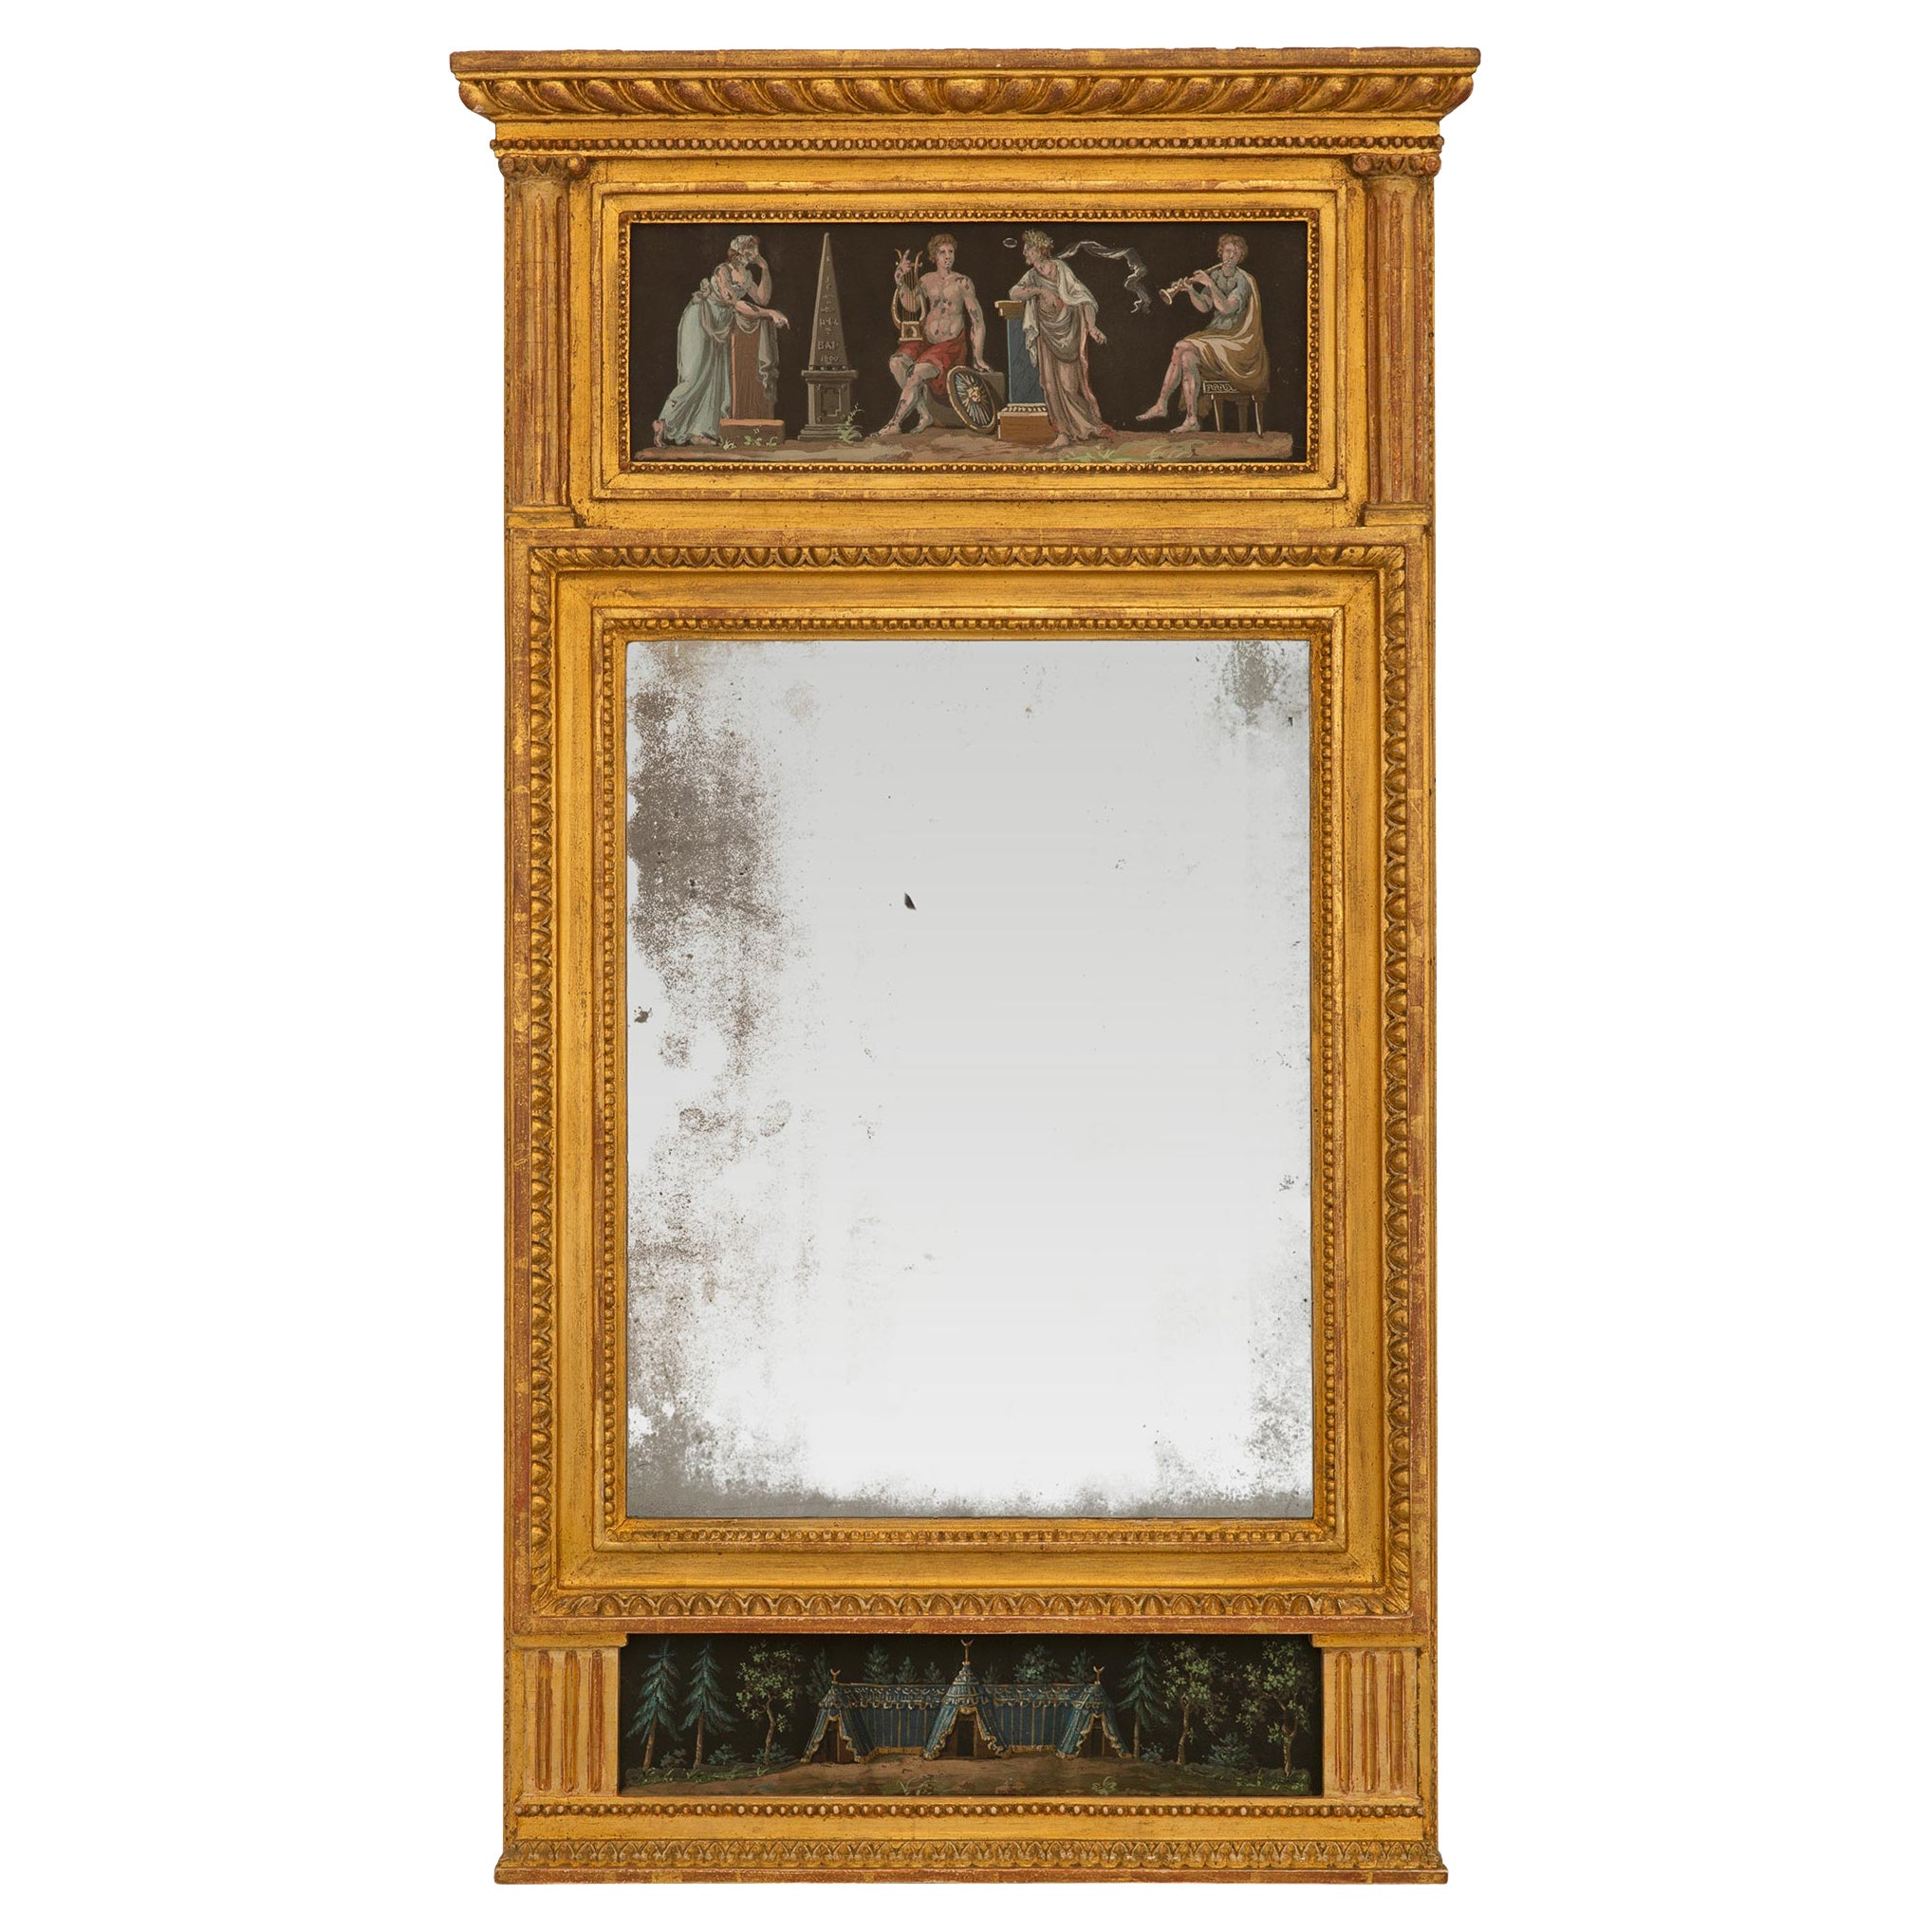 Italienischer Trumeau-Spiegel im neoklassischen Stil des frühen 19. Jahrhunderts aus vergoldetem Holz und Gouache